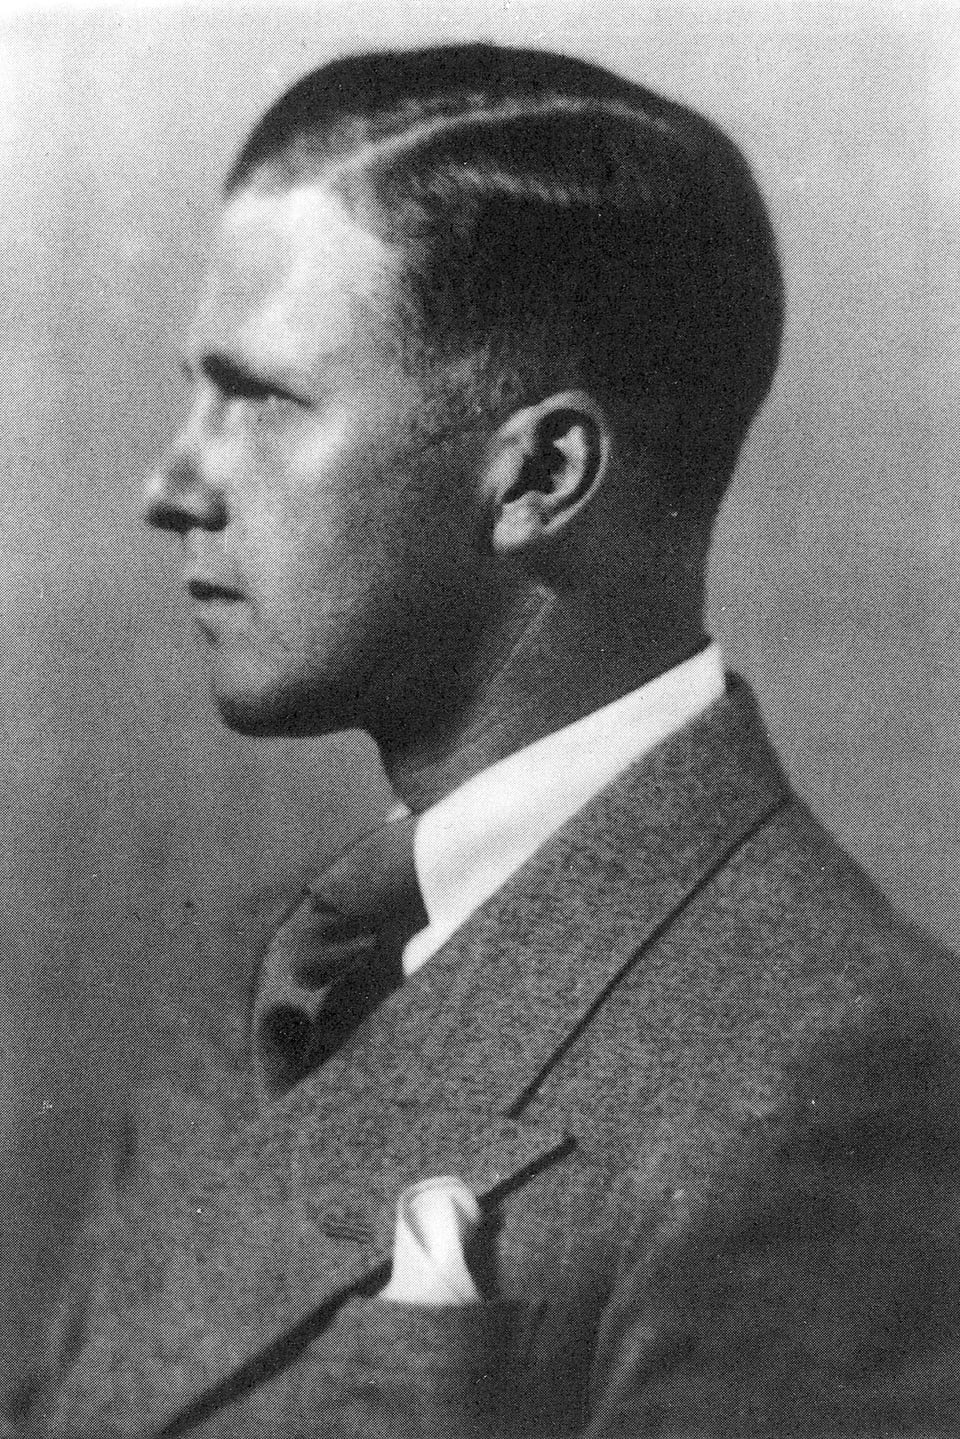 Schwarzweiss-Porträt: Seitenansicht eines jungen Mannes im Anzug.